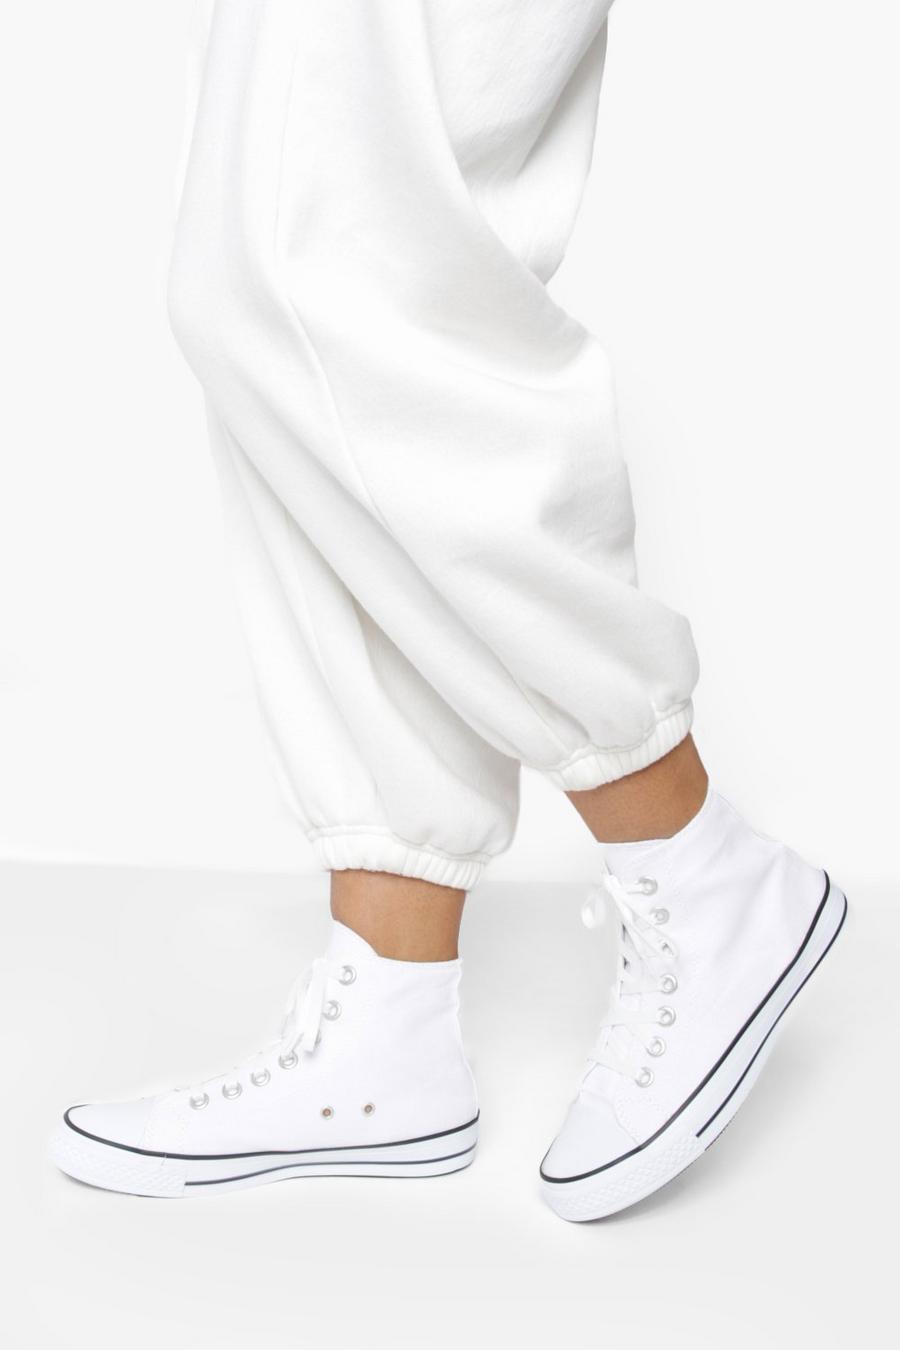 לבן bianco נעלי ספורט קנבס עם חלק עליון גבוה